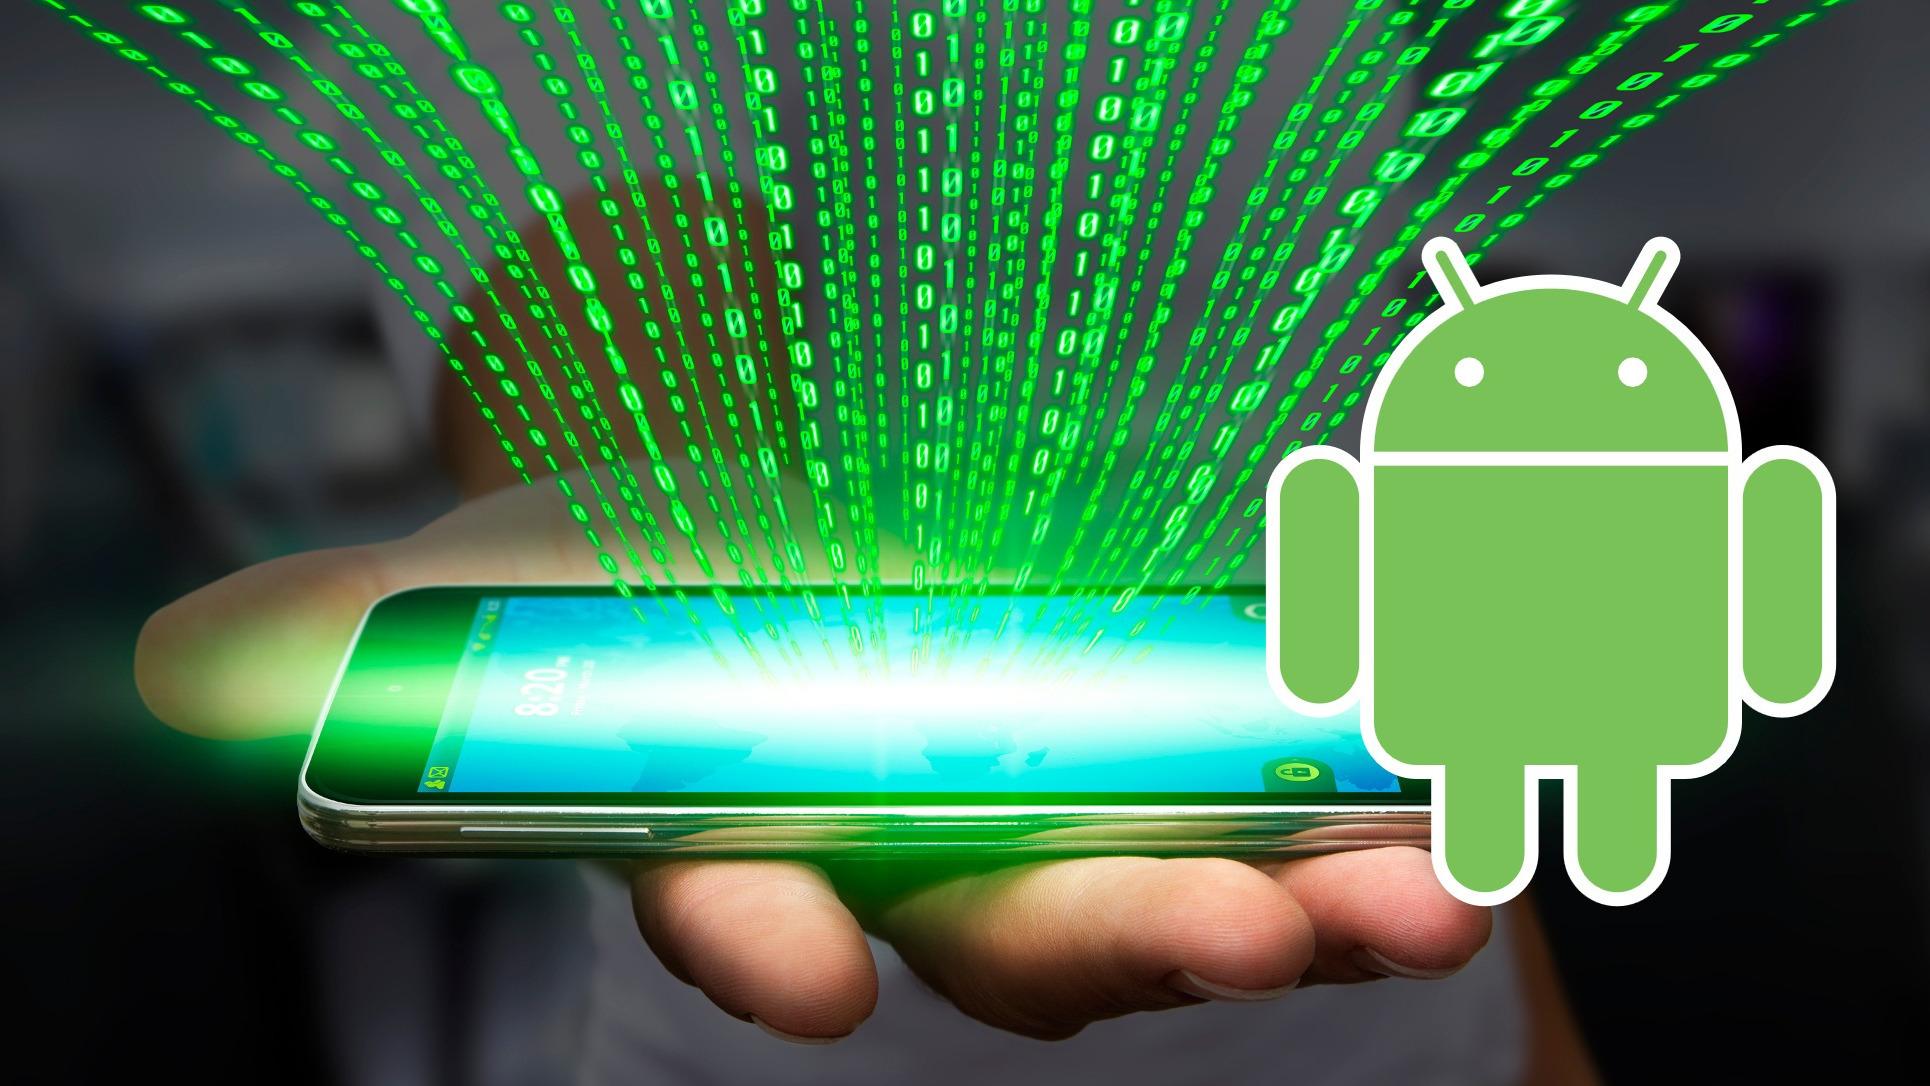 Ny Android-skadevare stjeler penger og hindrer deg i å ringe banken